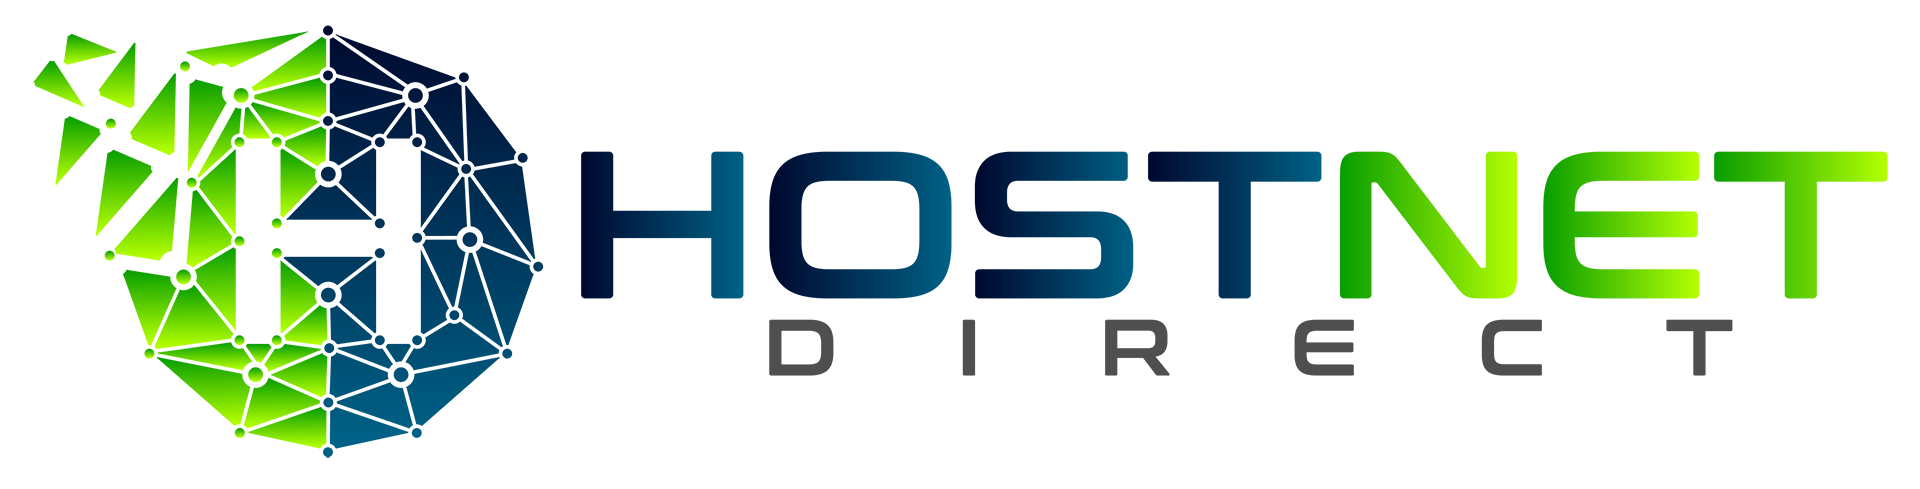 HostNetDirect